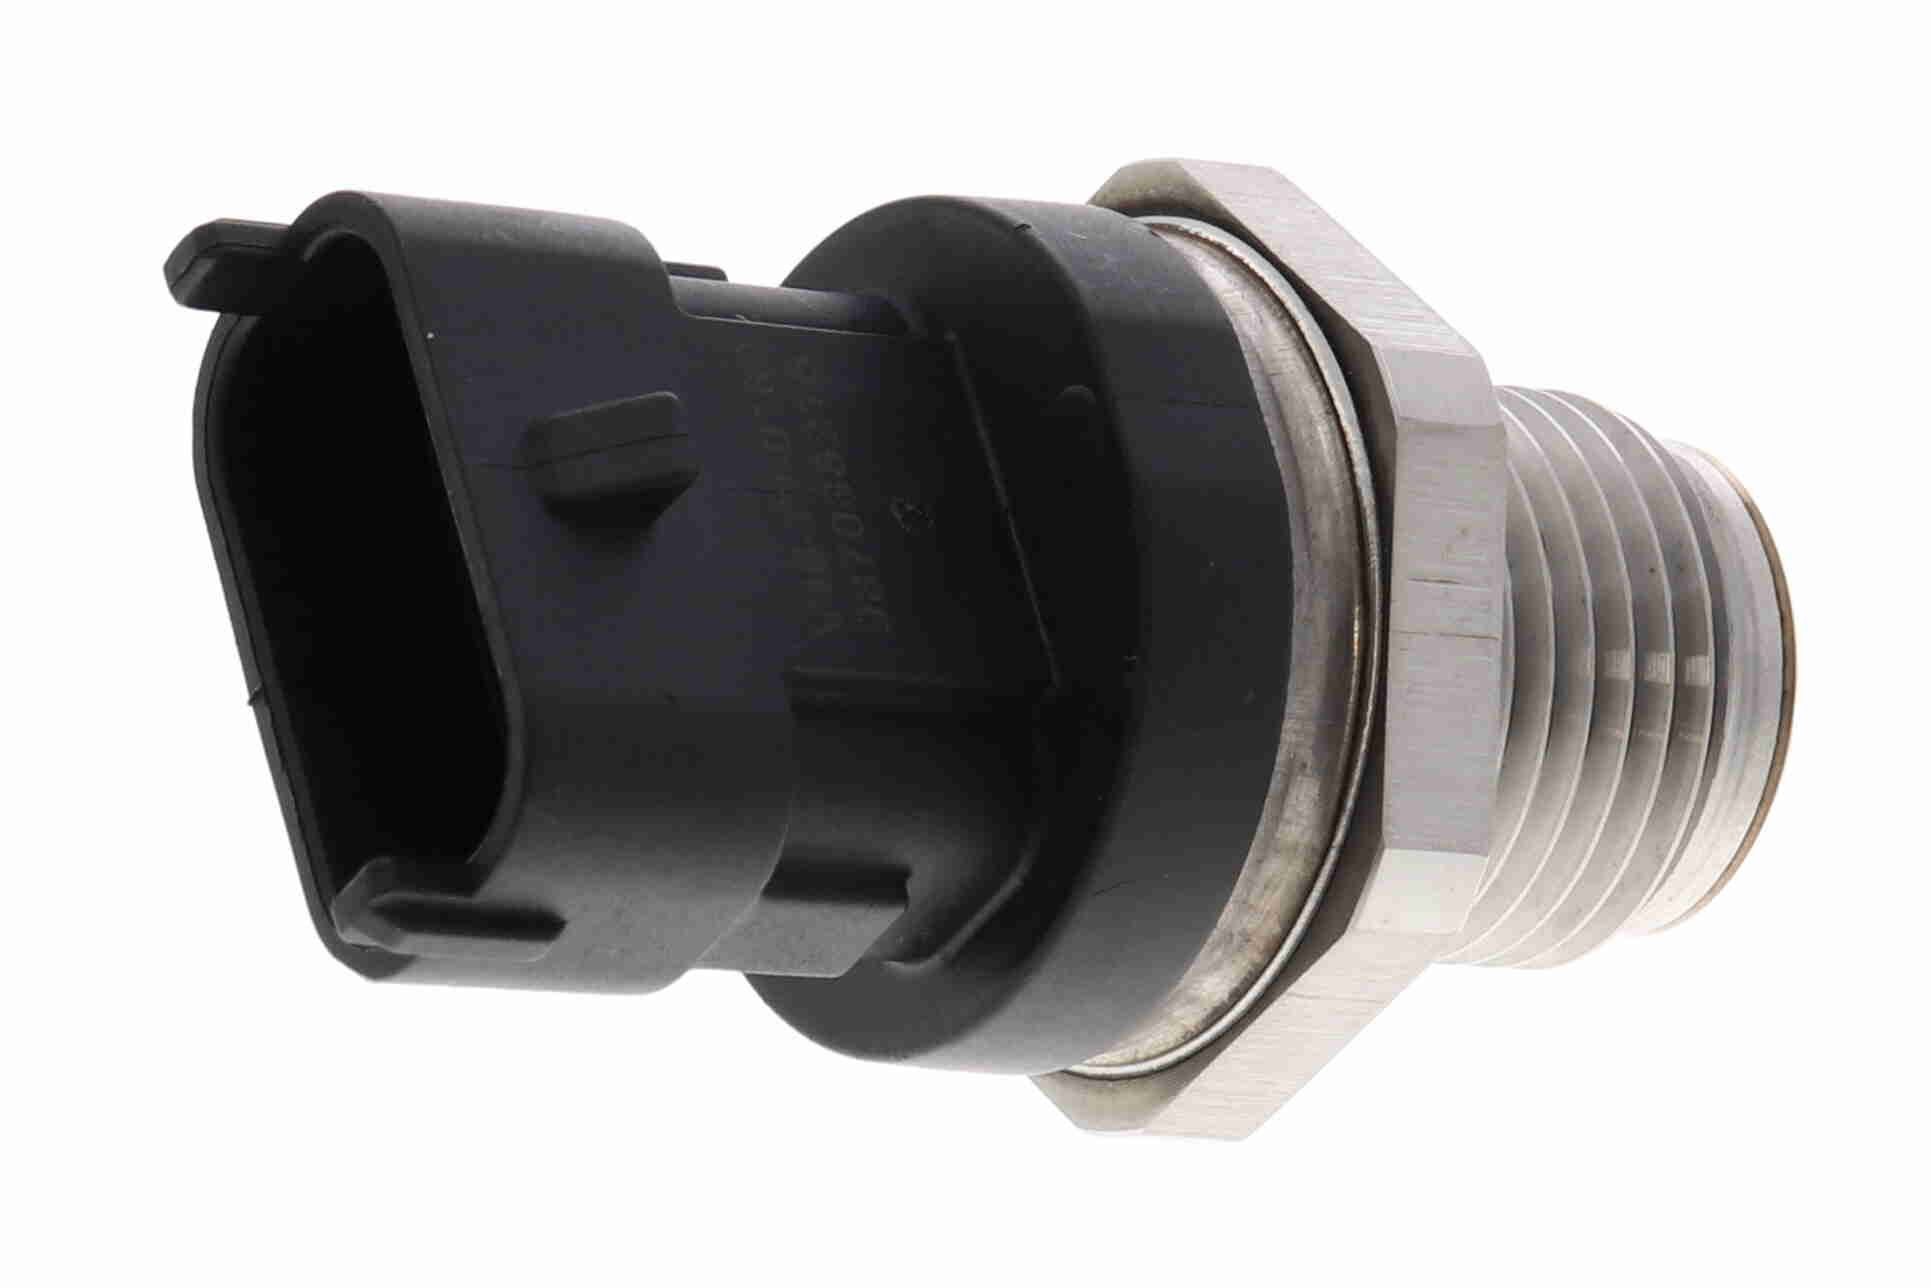 VEMO V46-72-0189 Fuel pressure sensor Q+, original equipment manufacturer quality